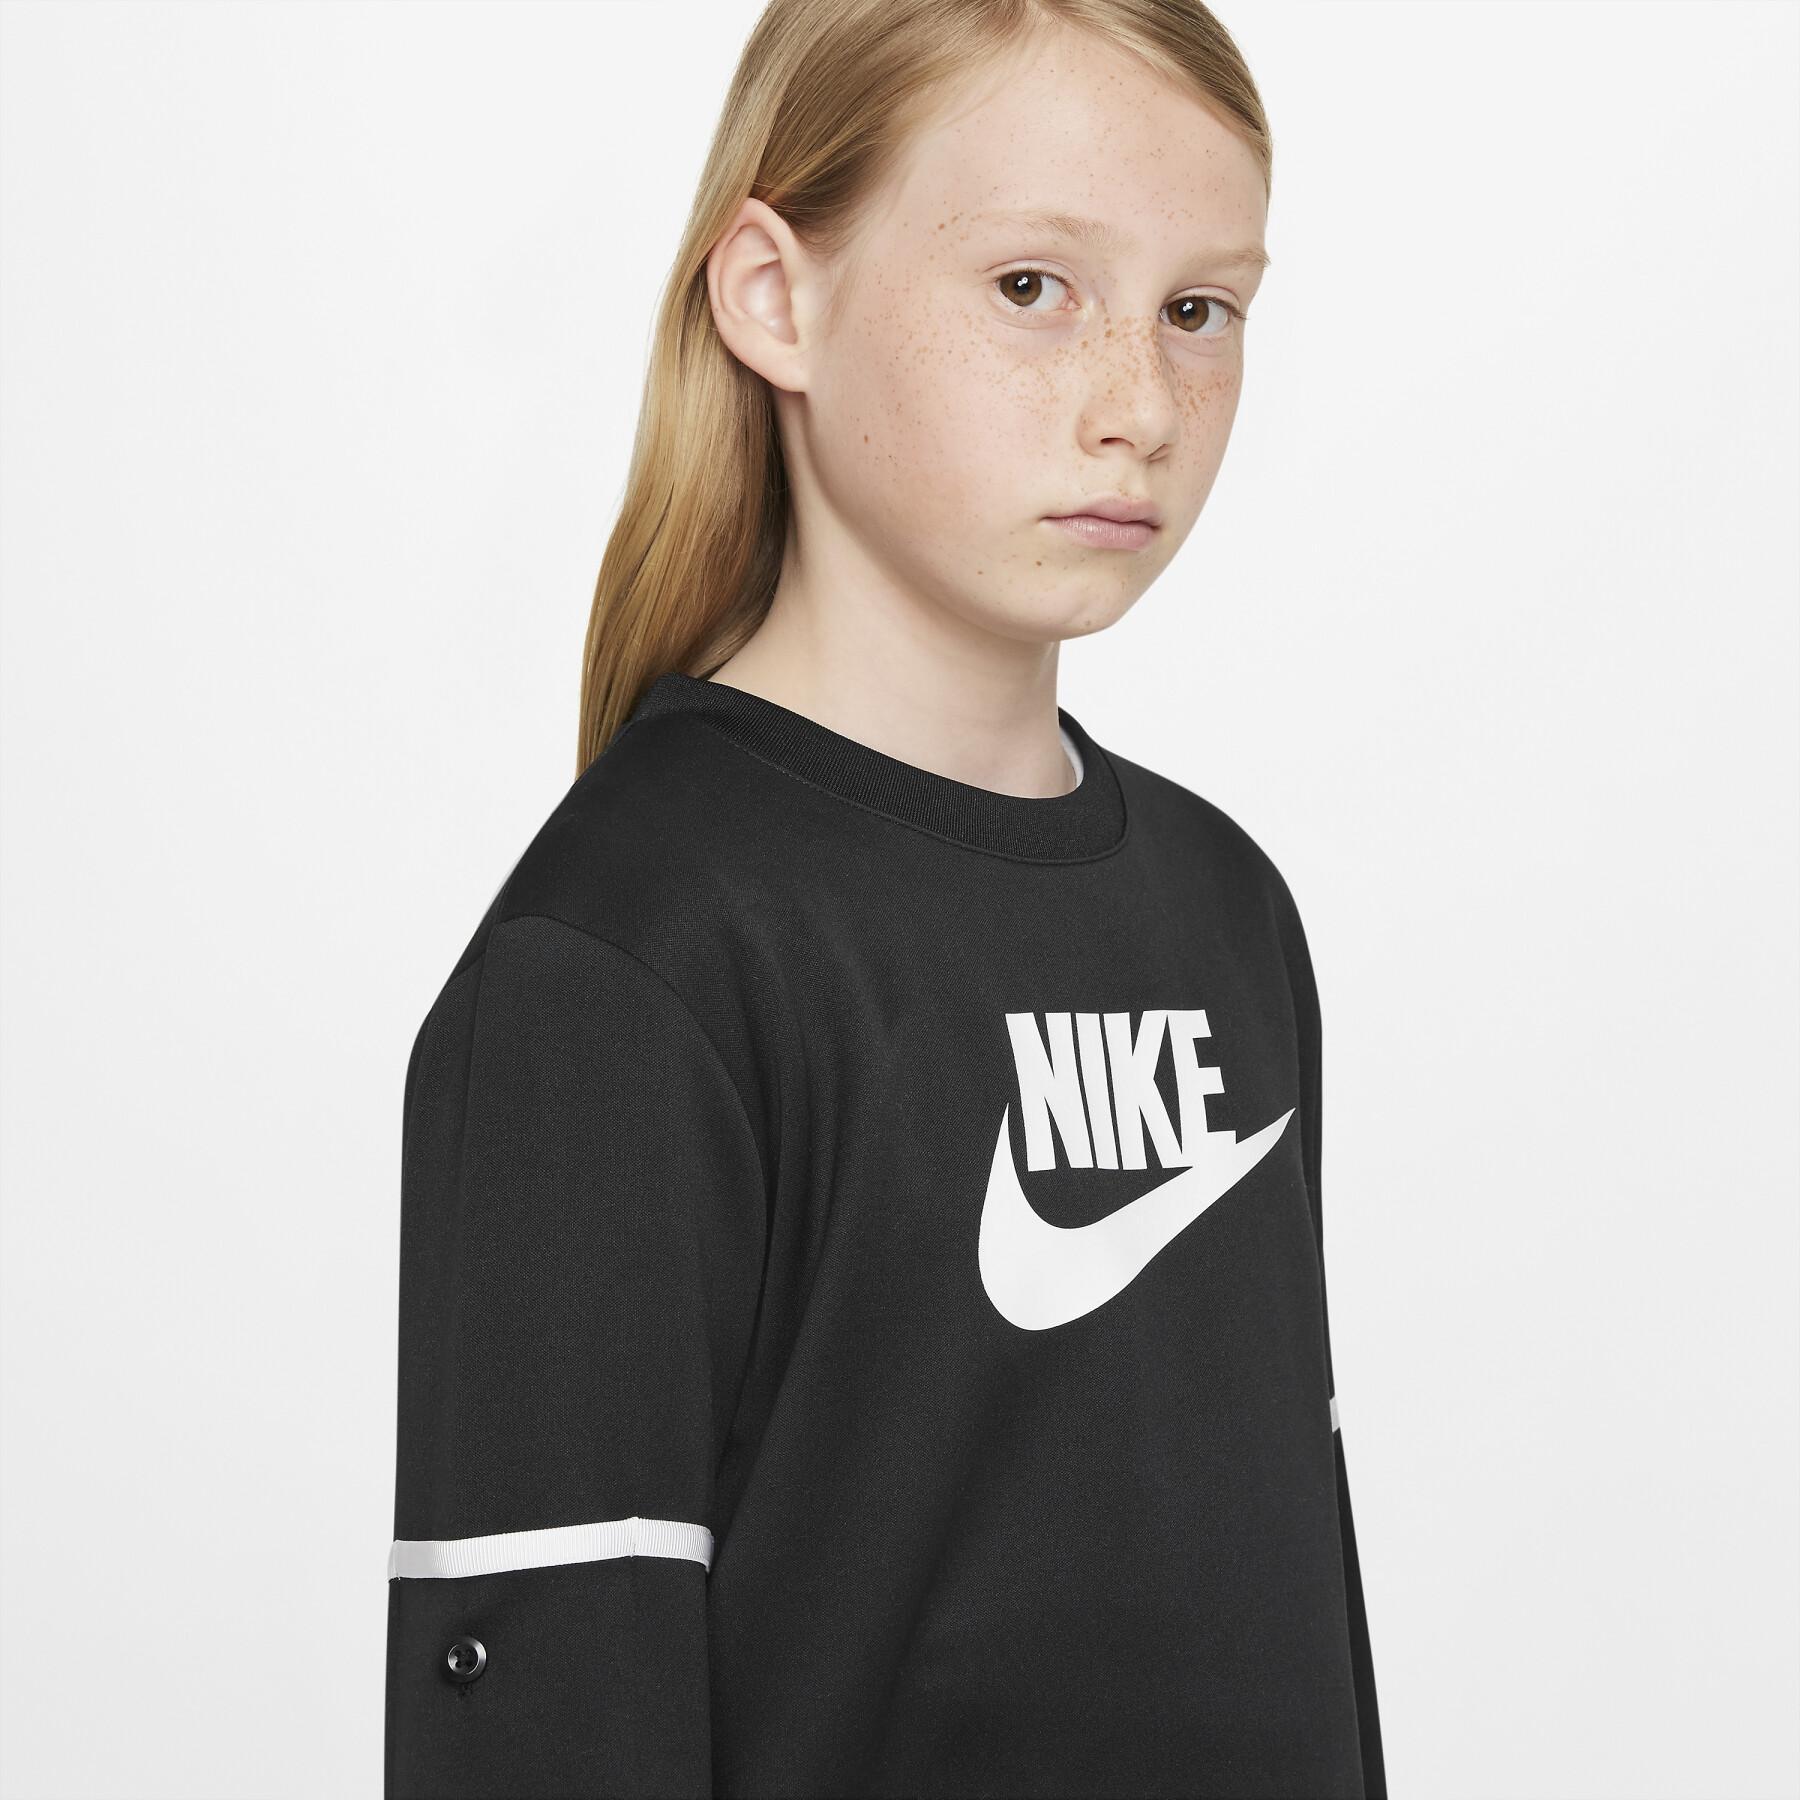 Survêtement enfant Nike Futura